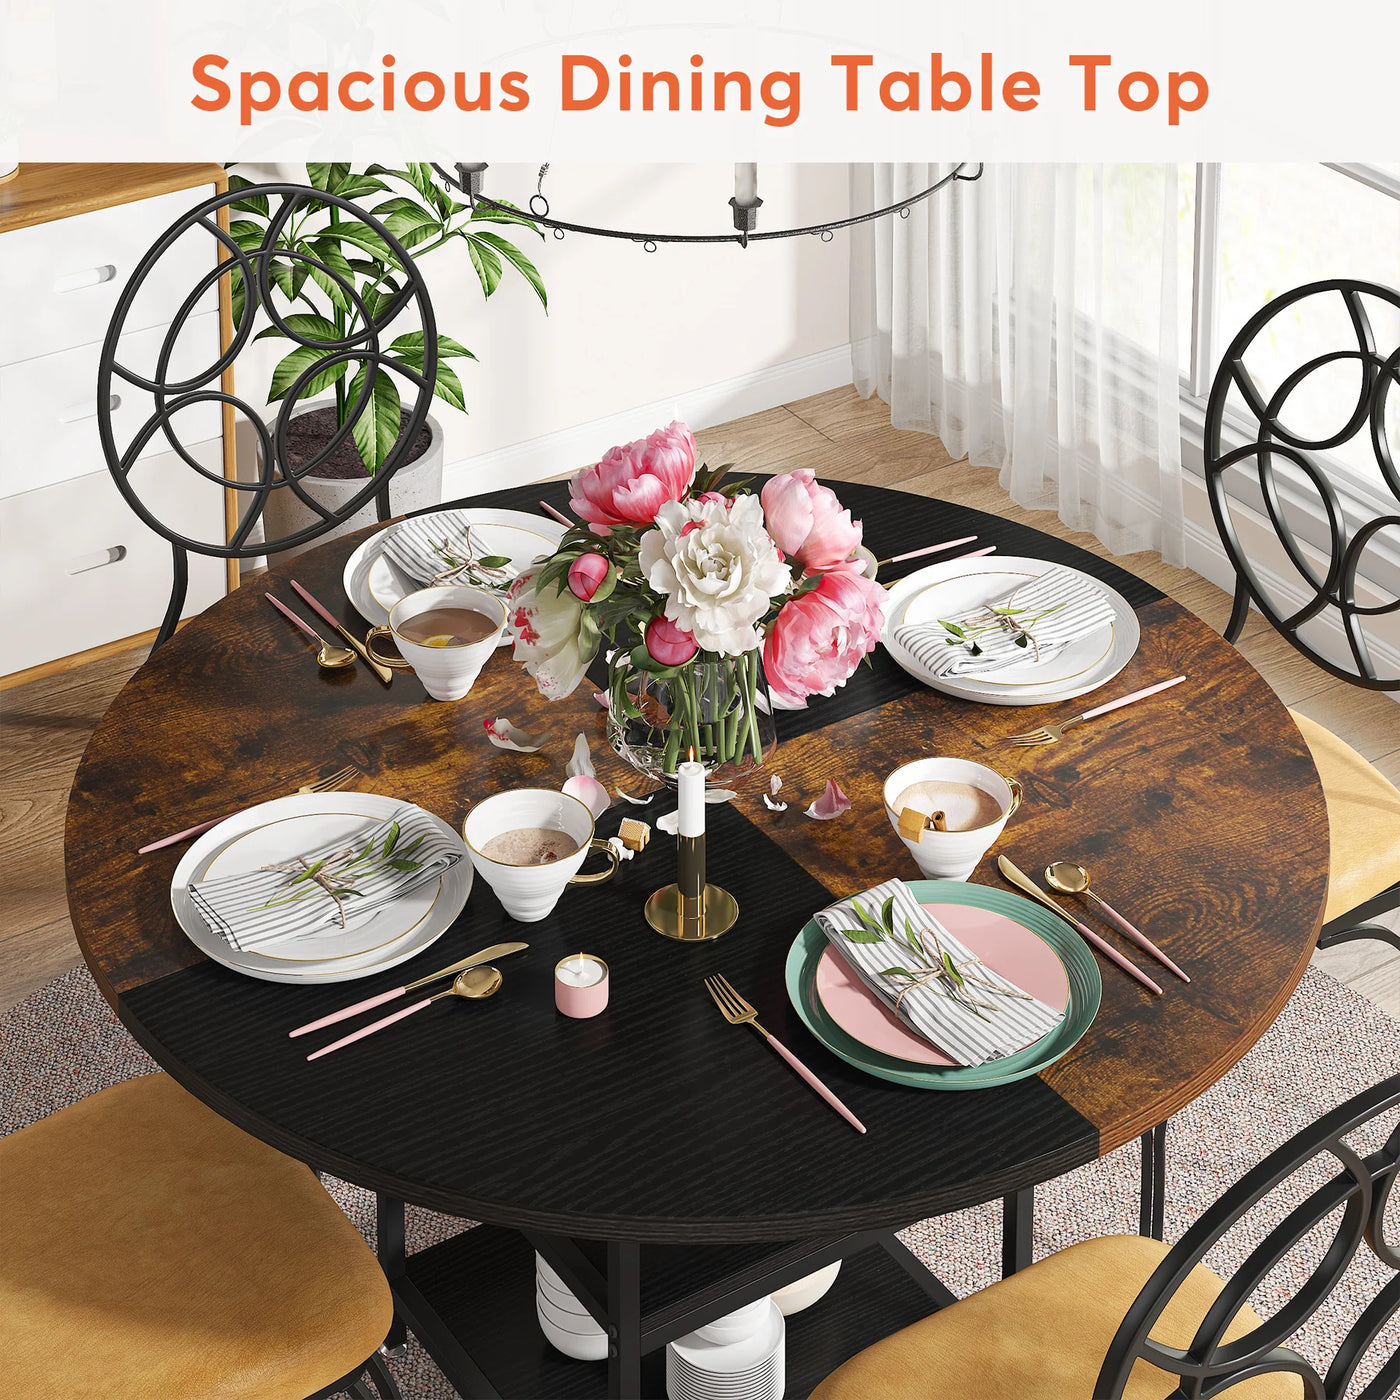 طاولة طعام خشبية مستديرة من جارد | طاولة عشاء للمطبخ مقاس 47 بوصة مع رف تخزين باللون البني والأسود